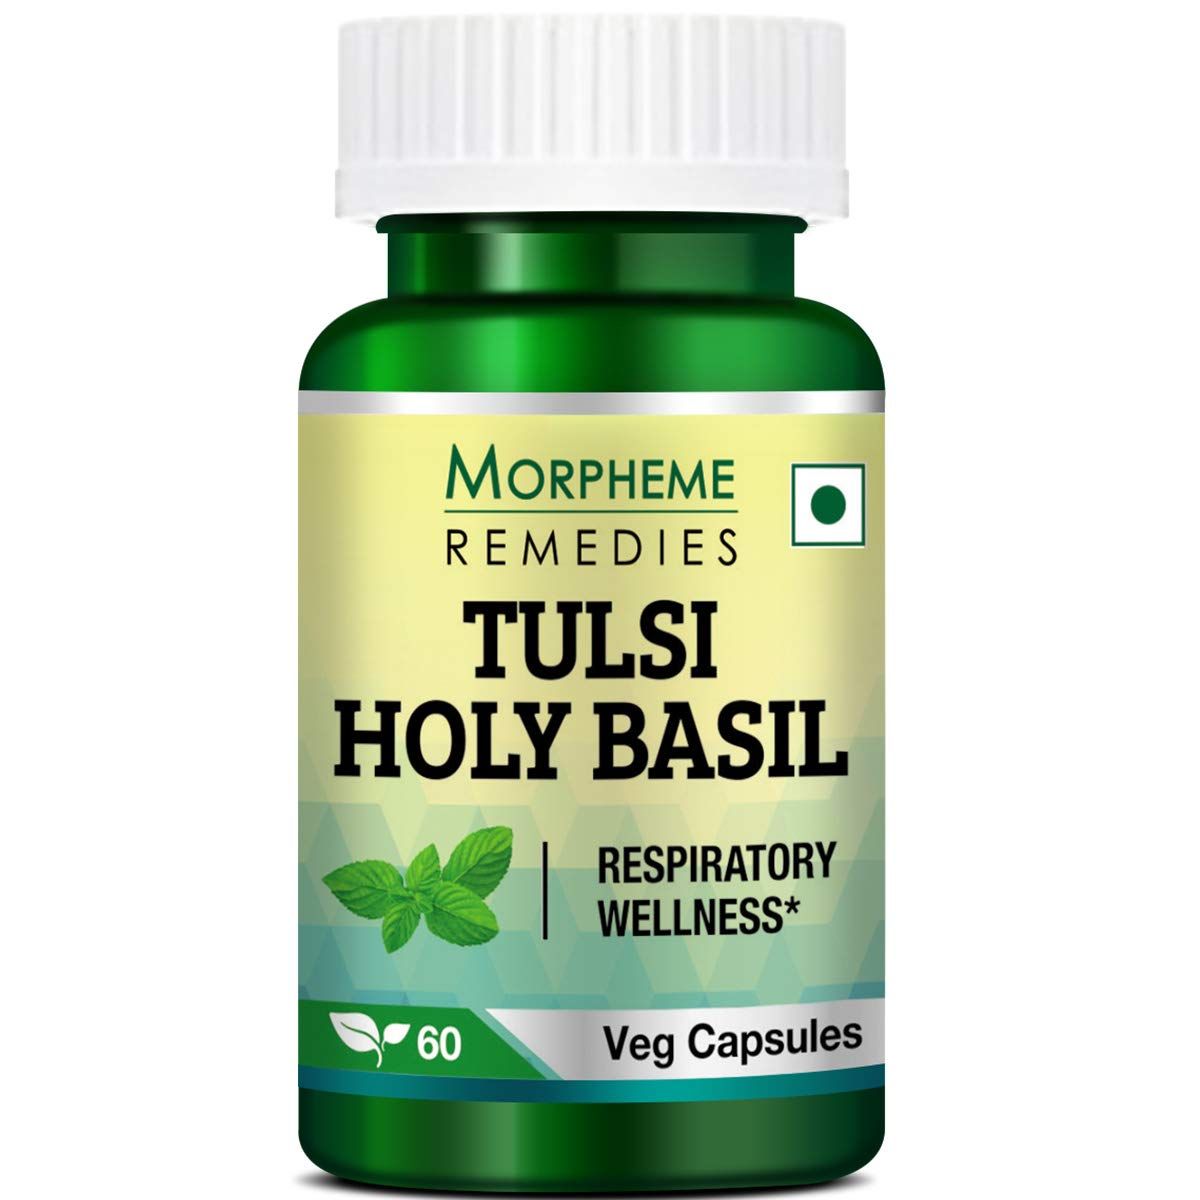 Morpheme Remedies Tulsi Holy Basil Image